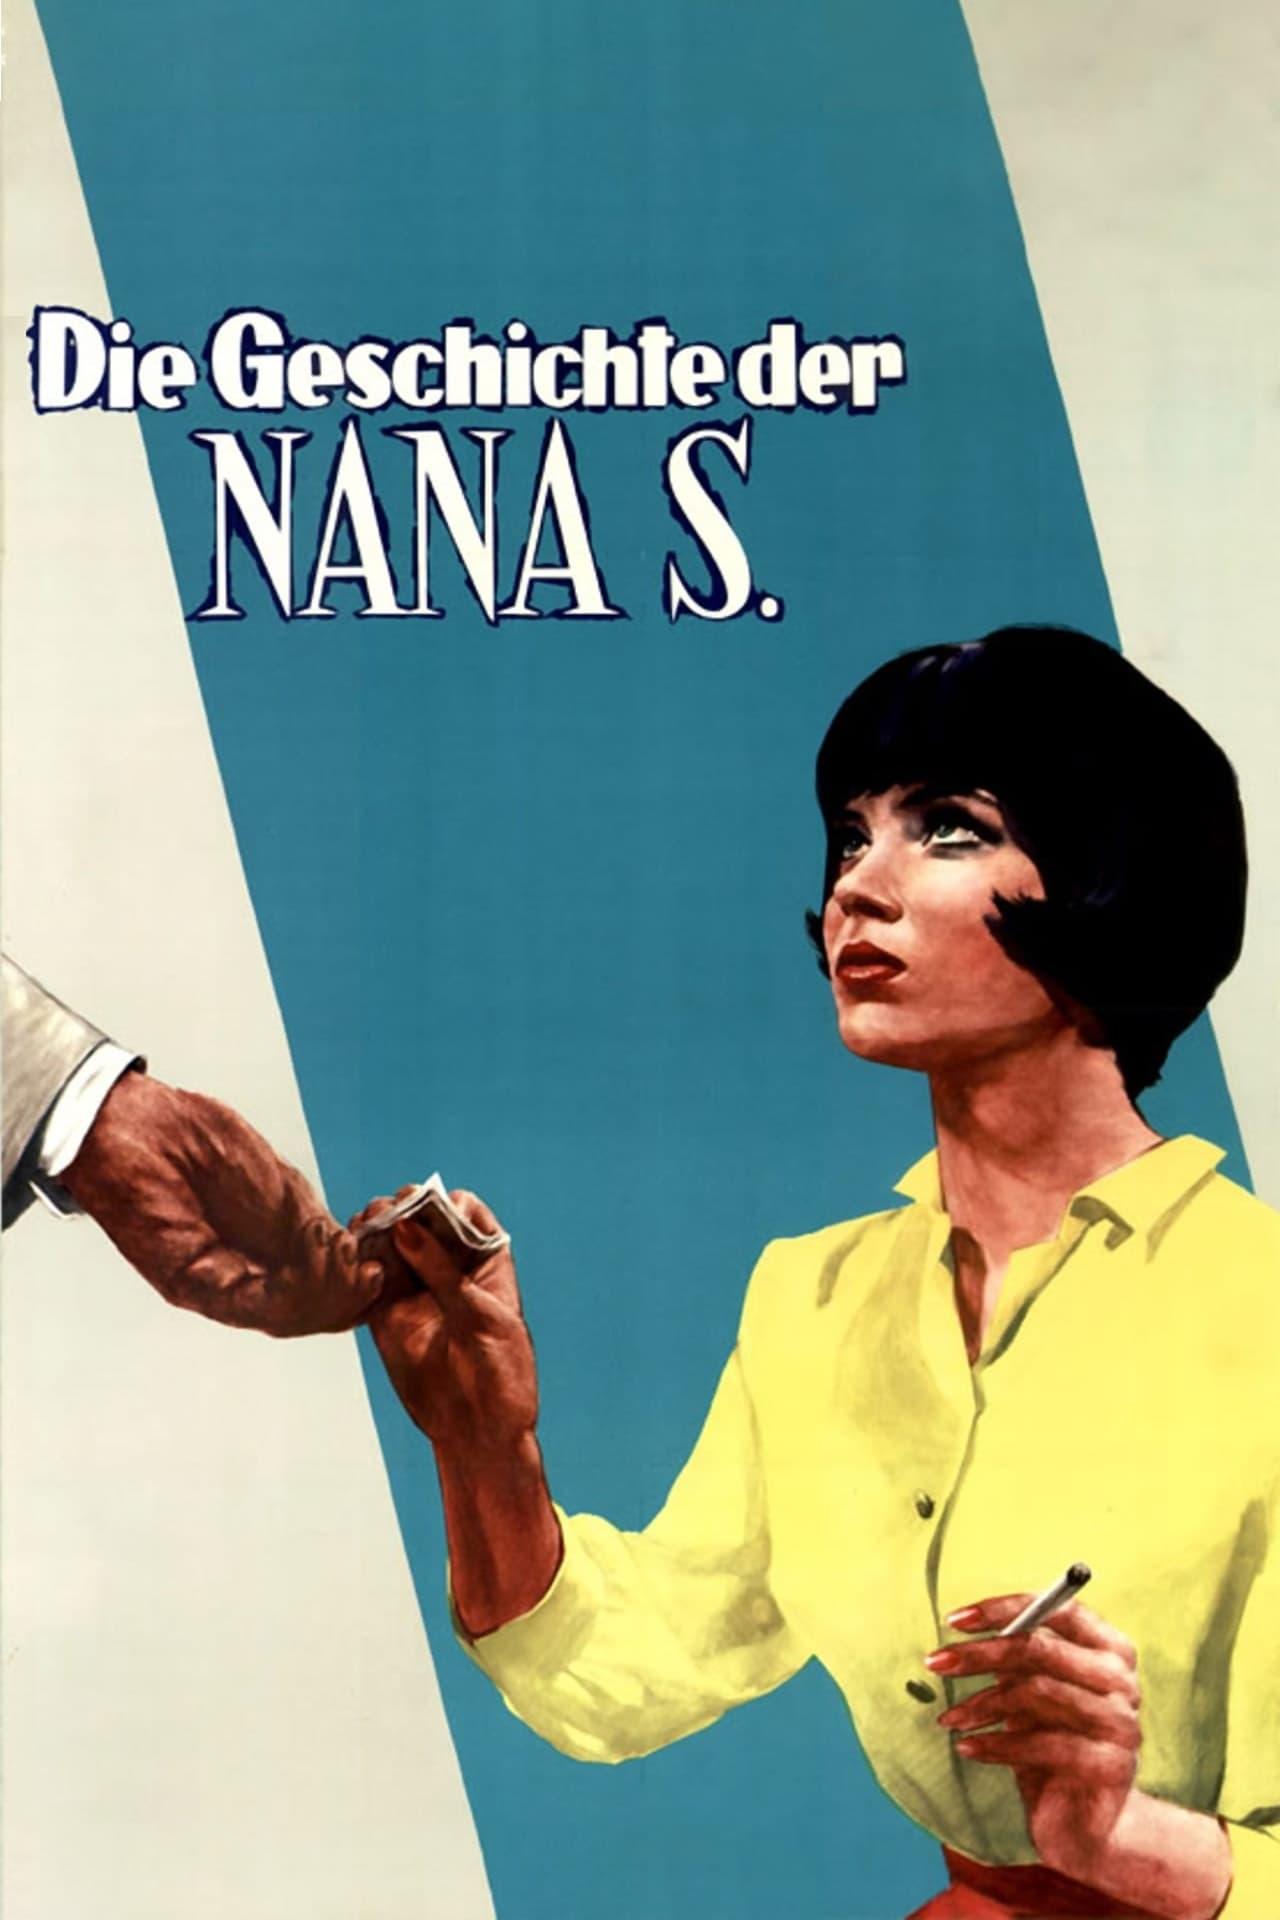 Die Geschichte der Nana S. poster